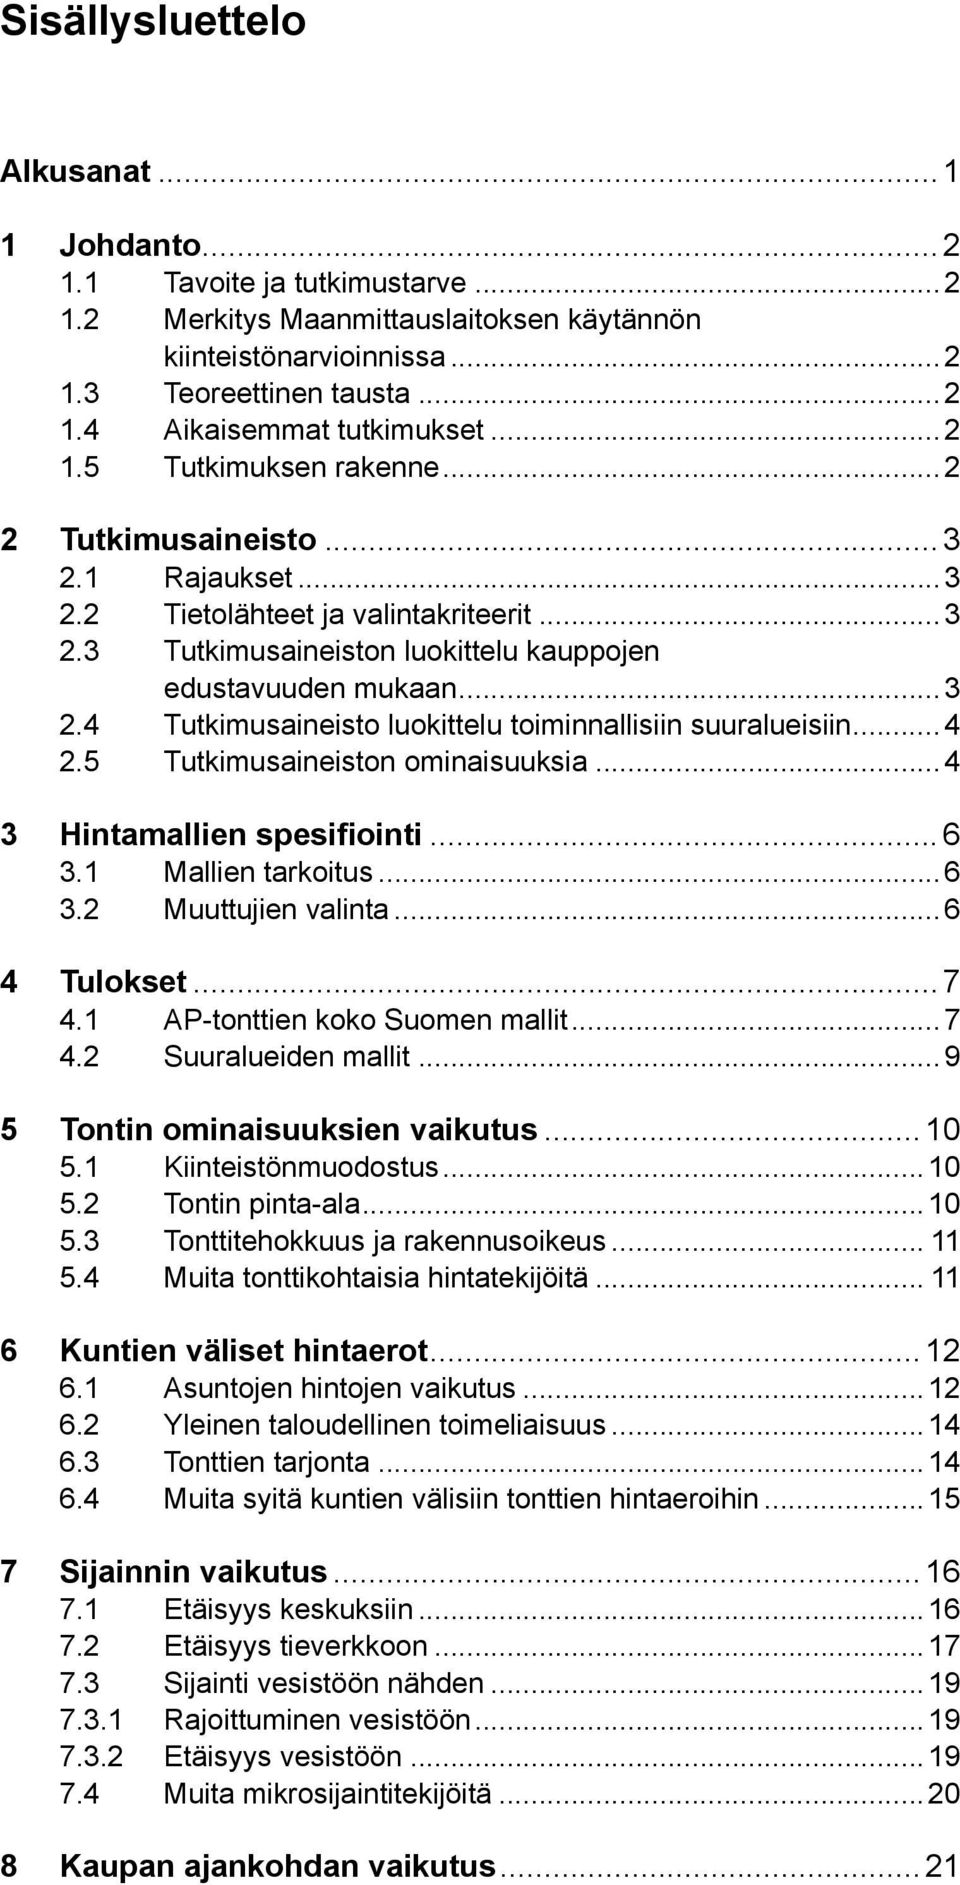 .. 4 2.5 Tutkimusaineiston ominaisuuksia...4 3 Hintamallien spesifiointi...6 3.1 Mallien tarkoitus...6 3.2 Muuttujien valinta...6 4 Tulokset...7 4.1 AP-tonttien koko Suomen mallit...7 4.2 Suuralueiden mallit.